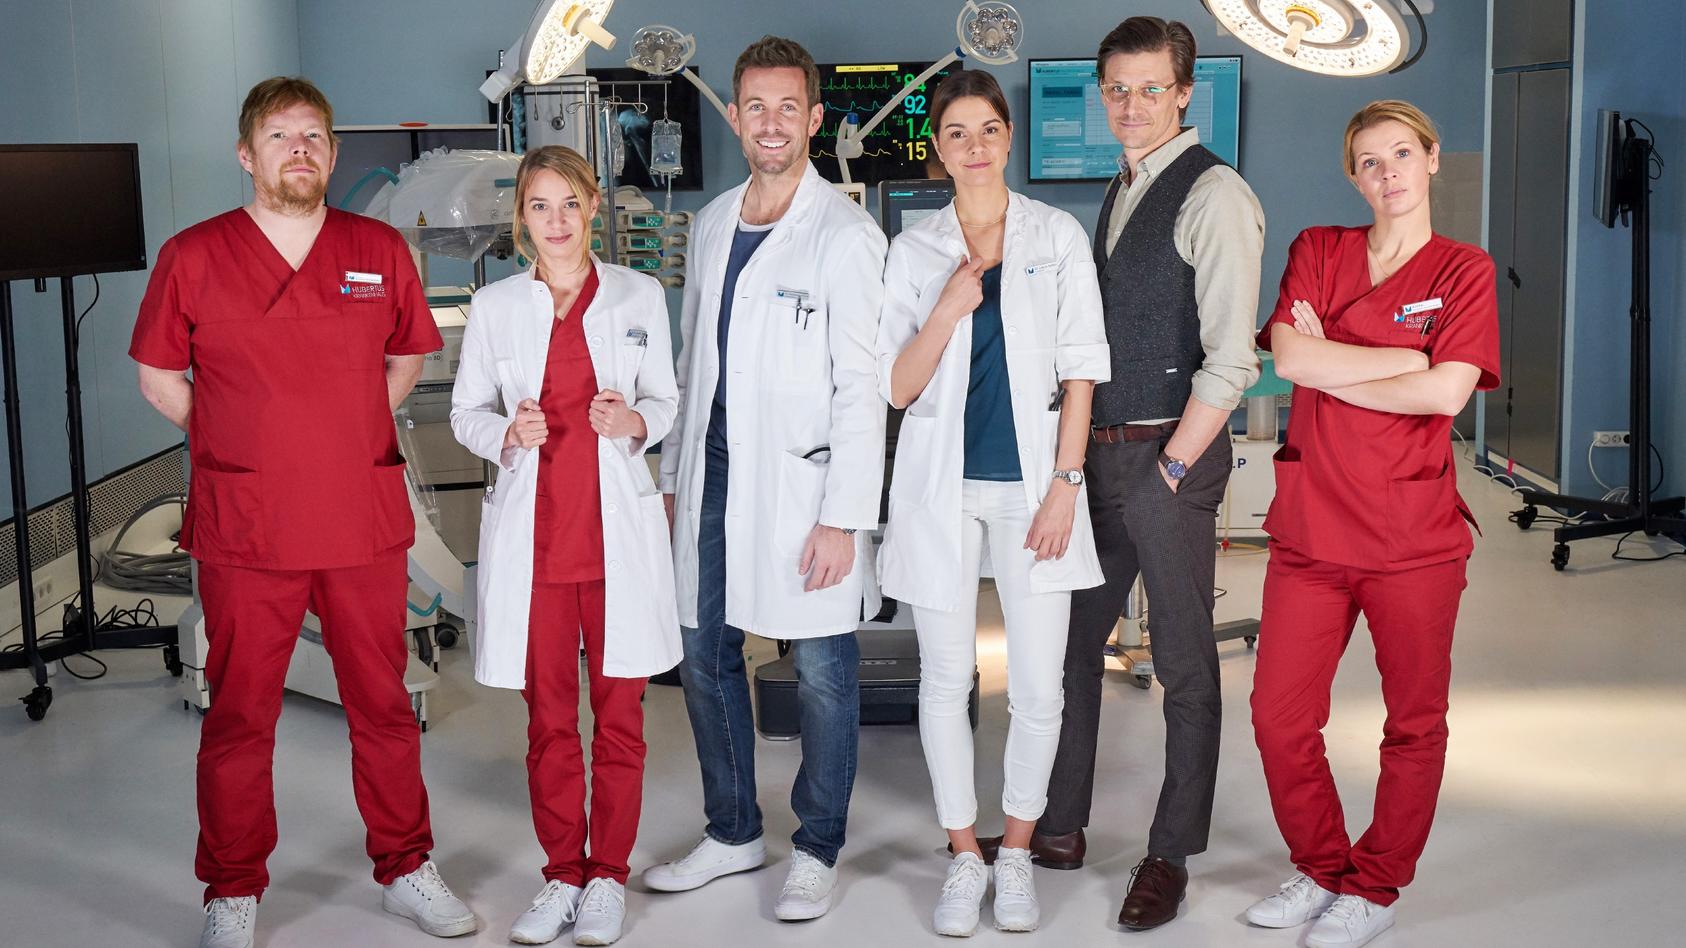 Das Ärzte-Team in der neuen Medical-Serie "Lifelines".